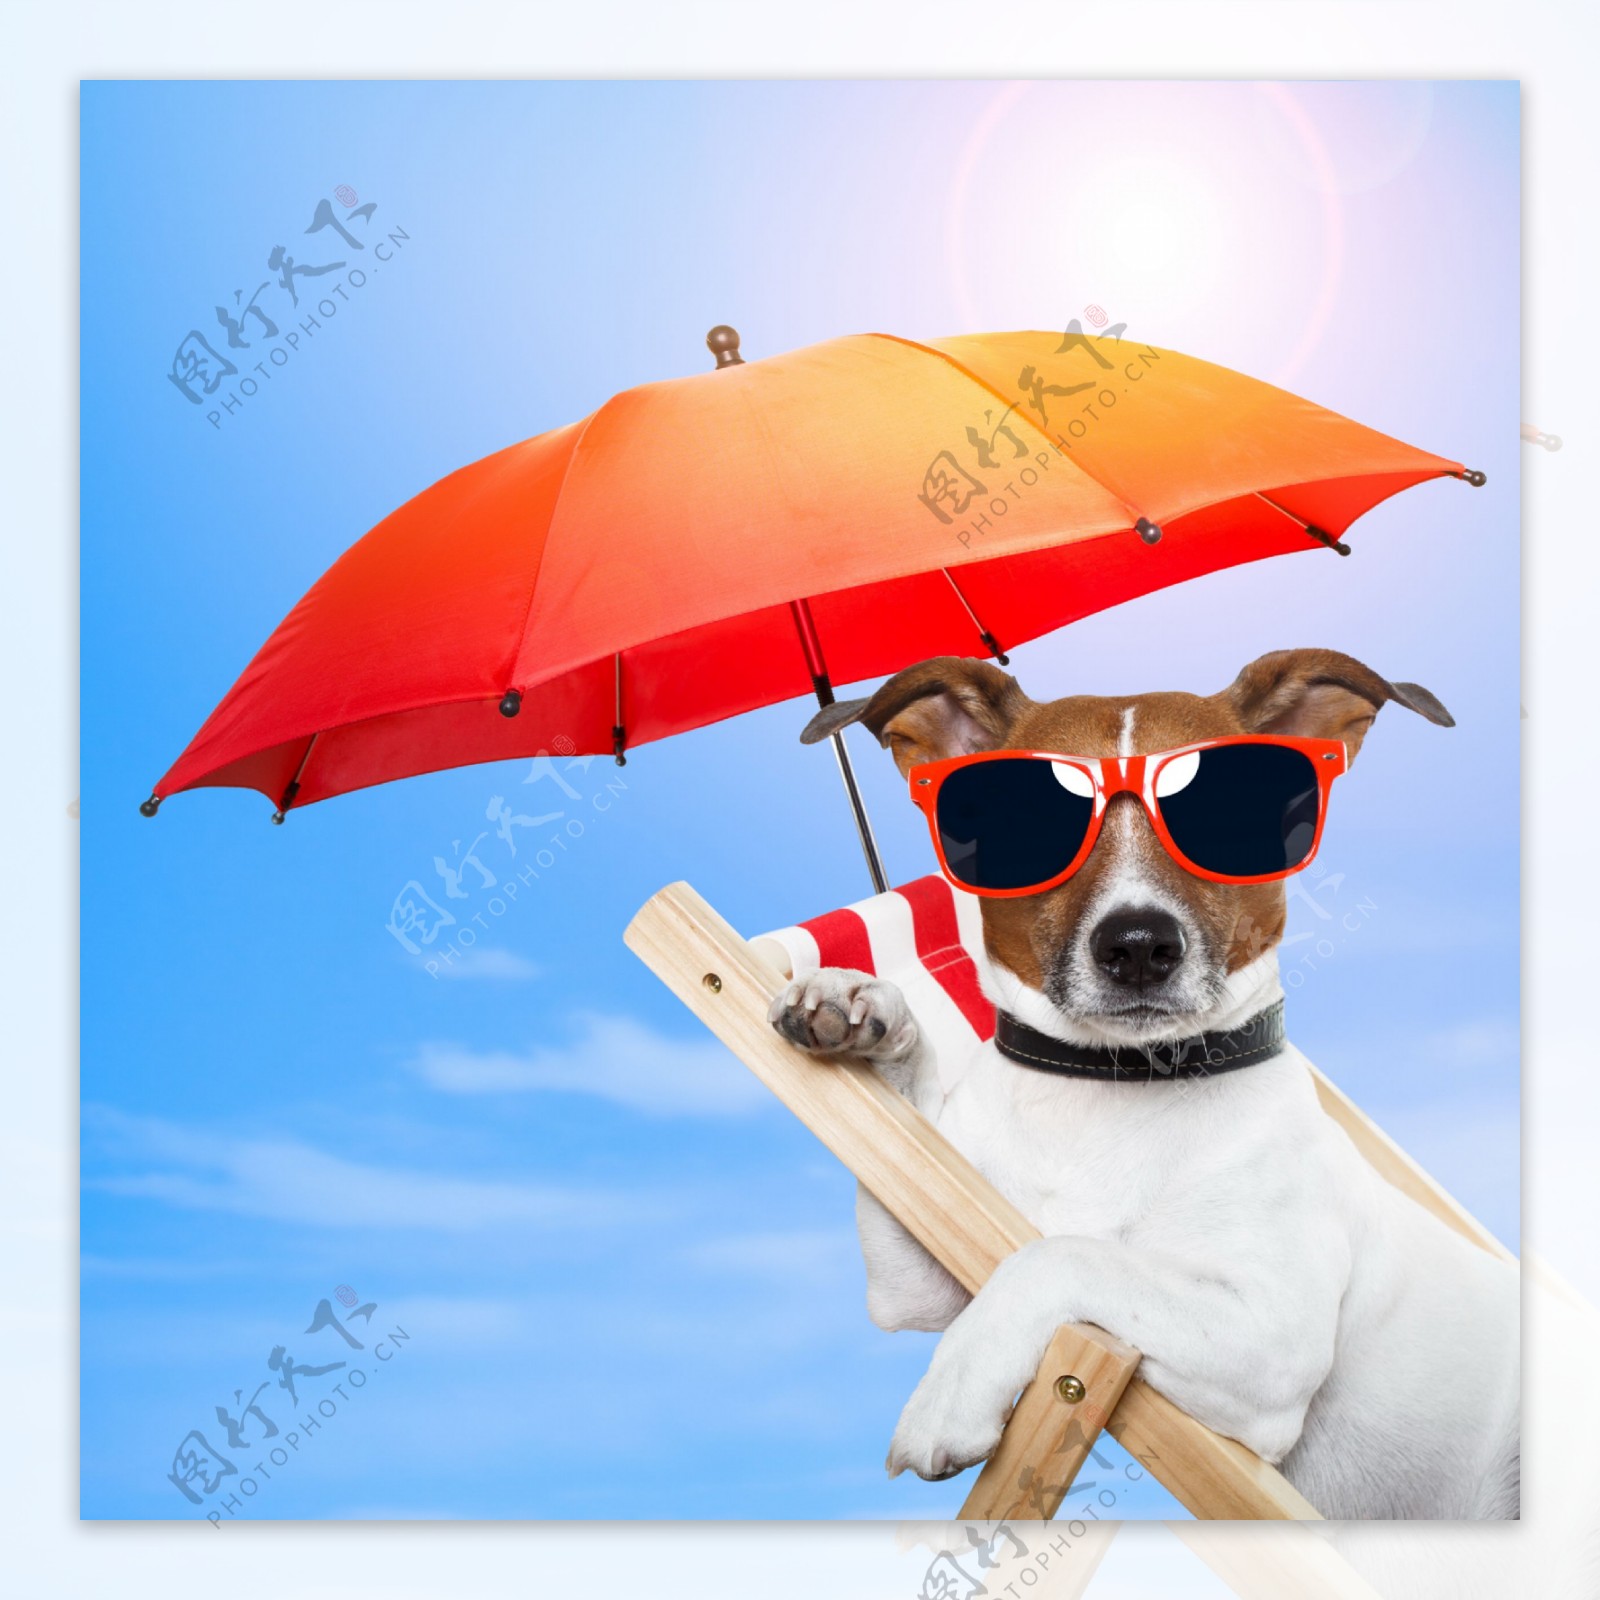 打雨伞的小狗图片